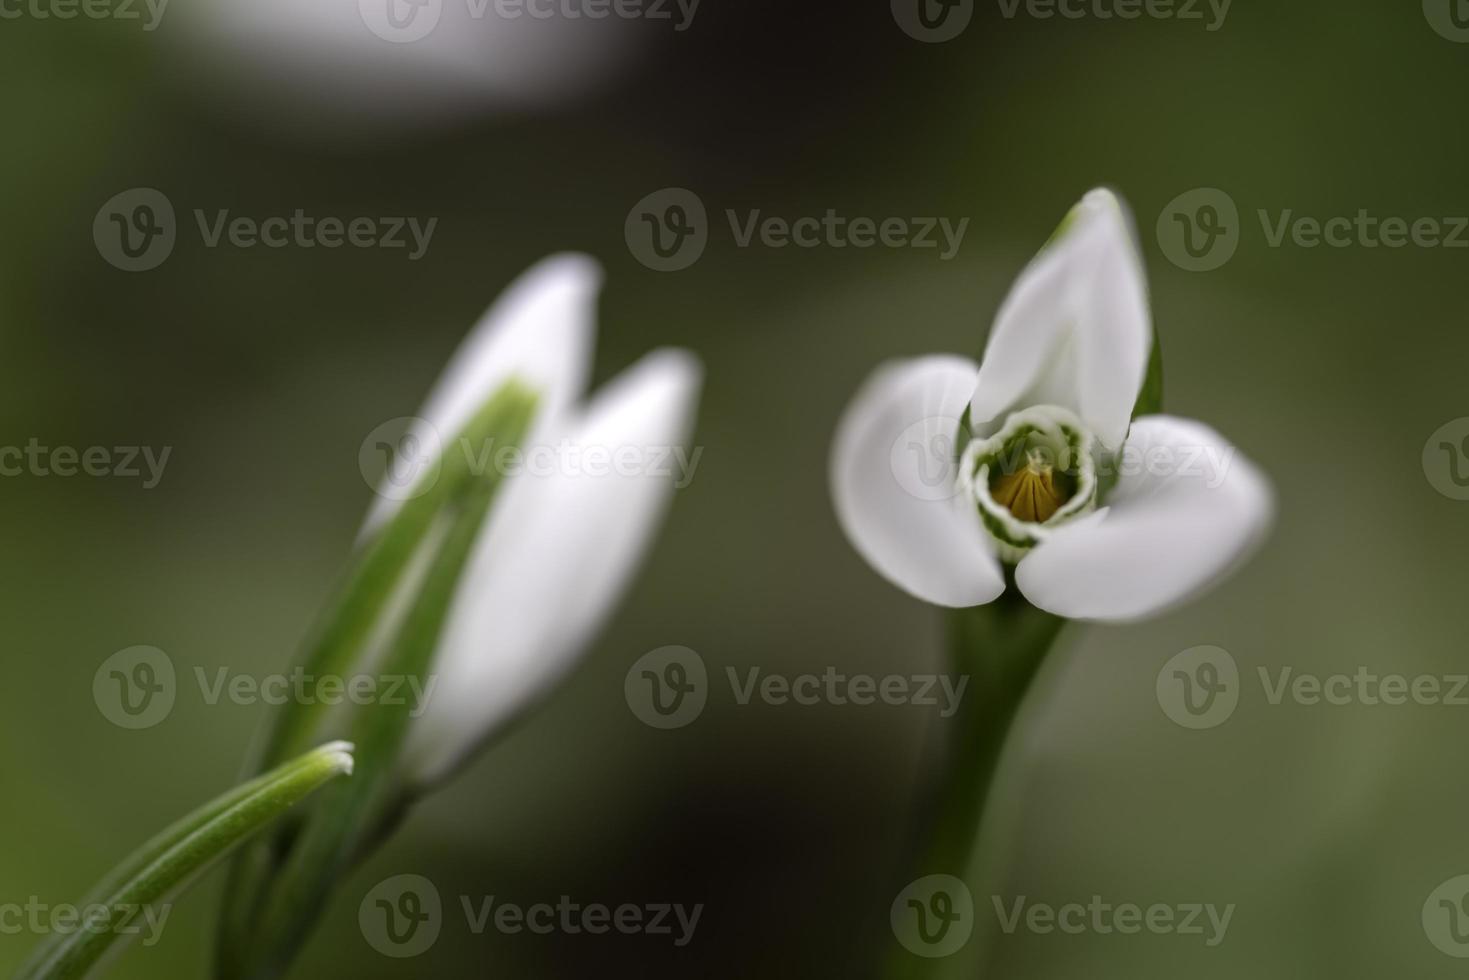 fiori bucaneve - Galanthus nivalis primo piano con messa a fuoco selettiva foto